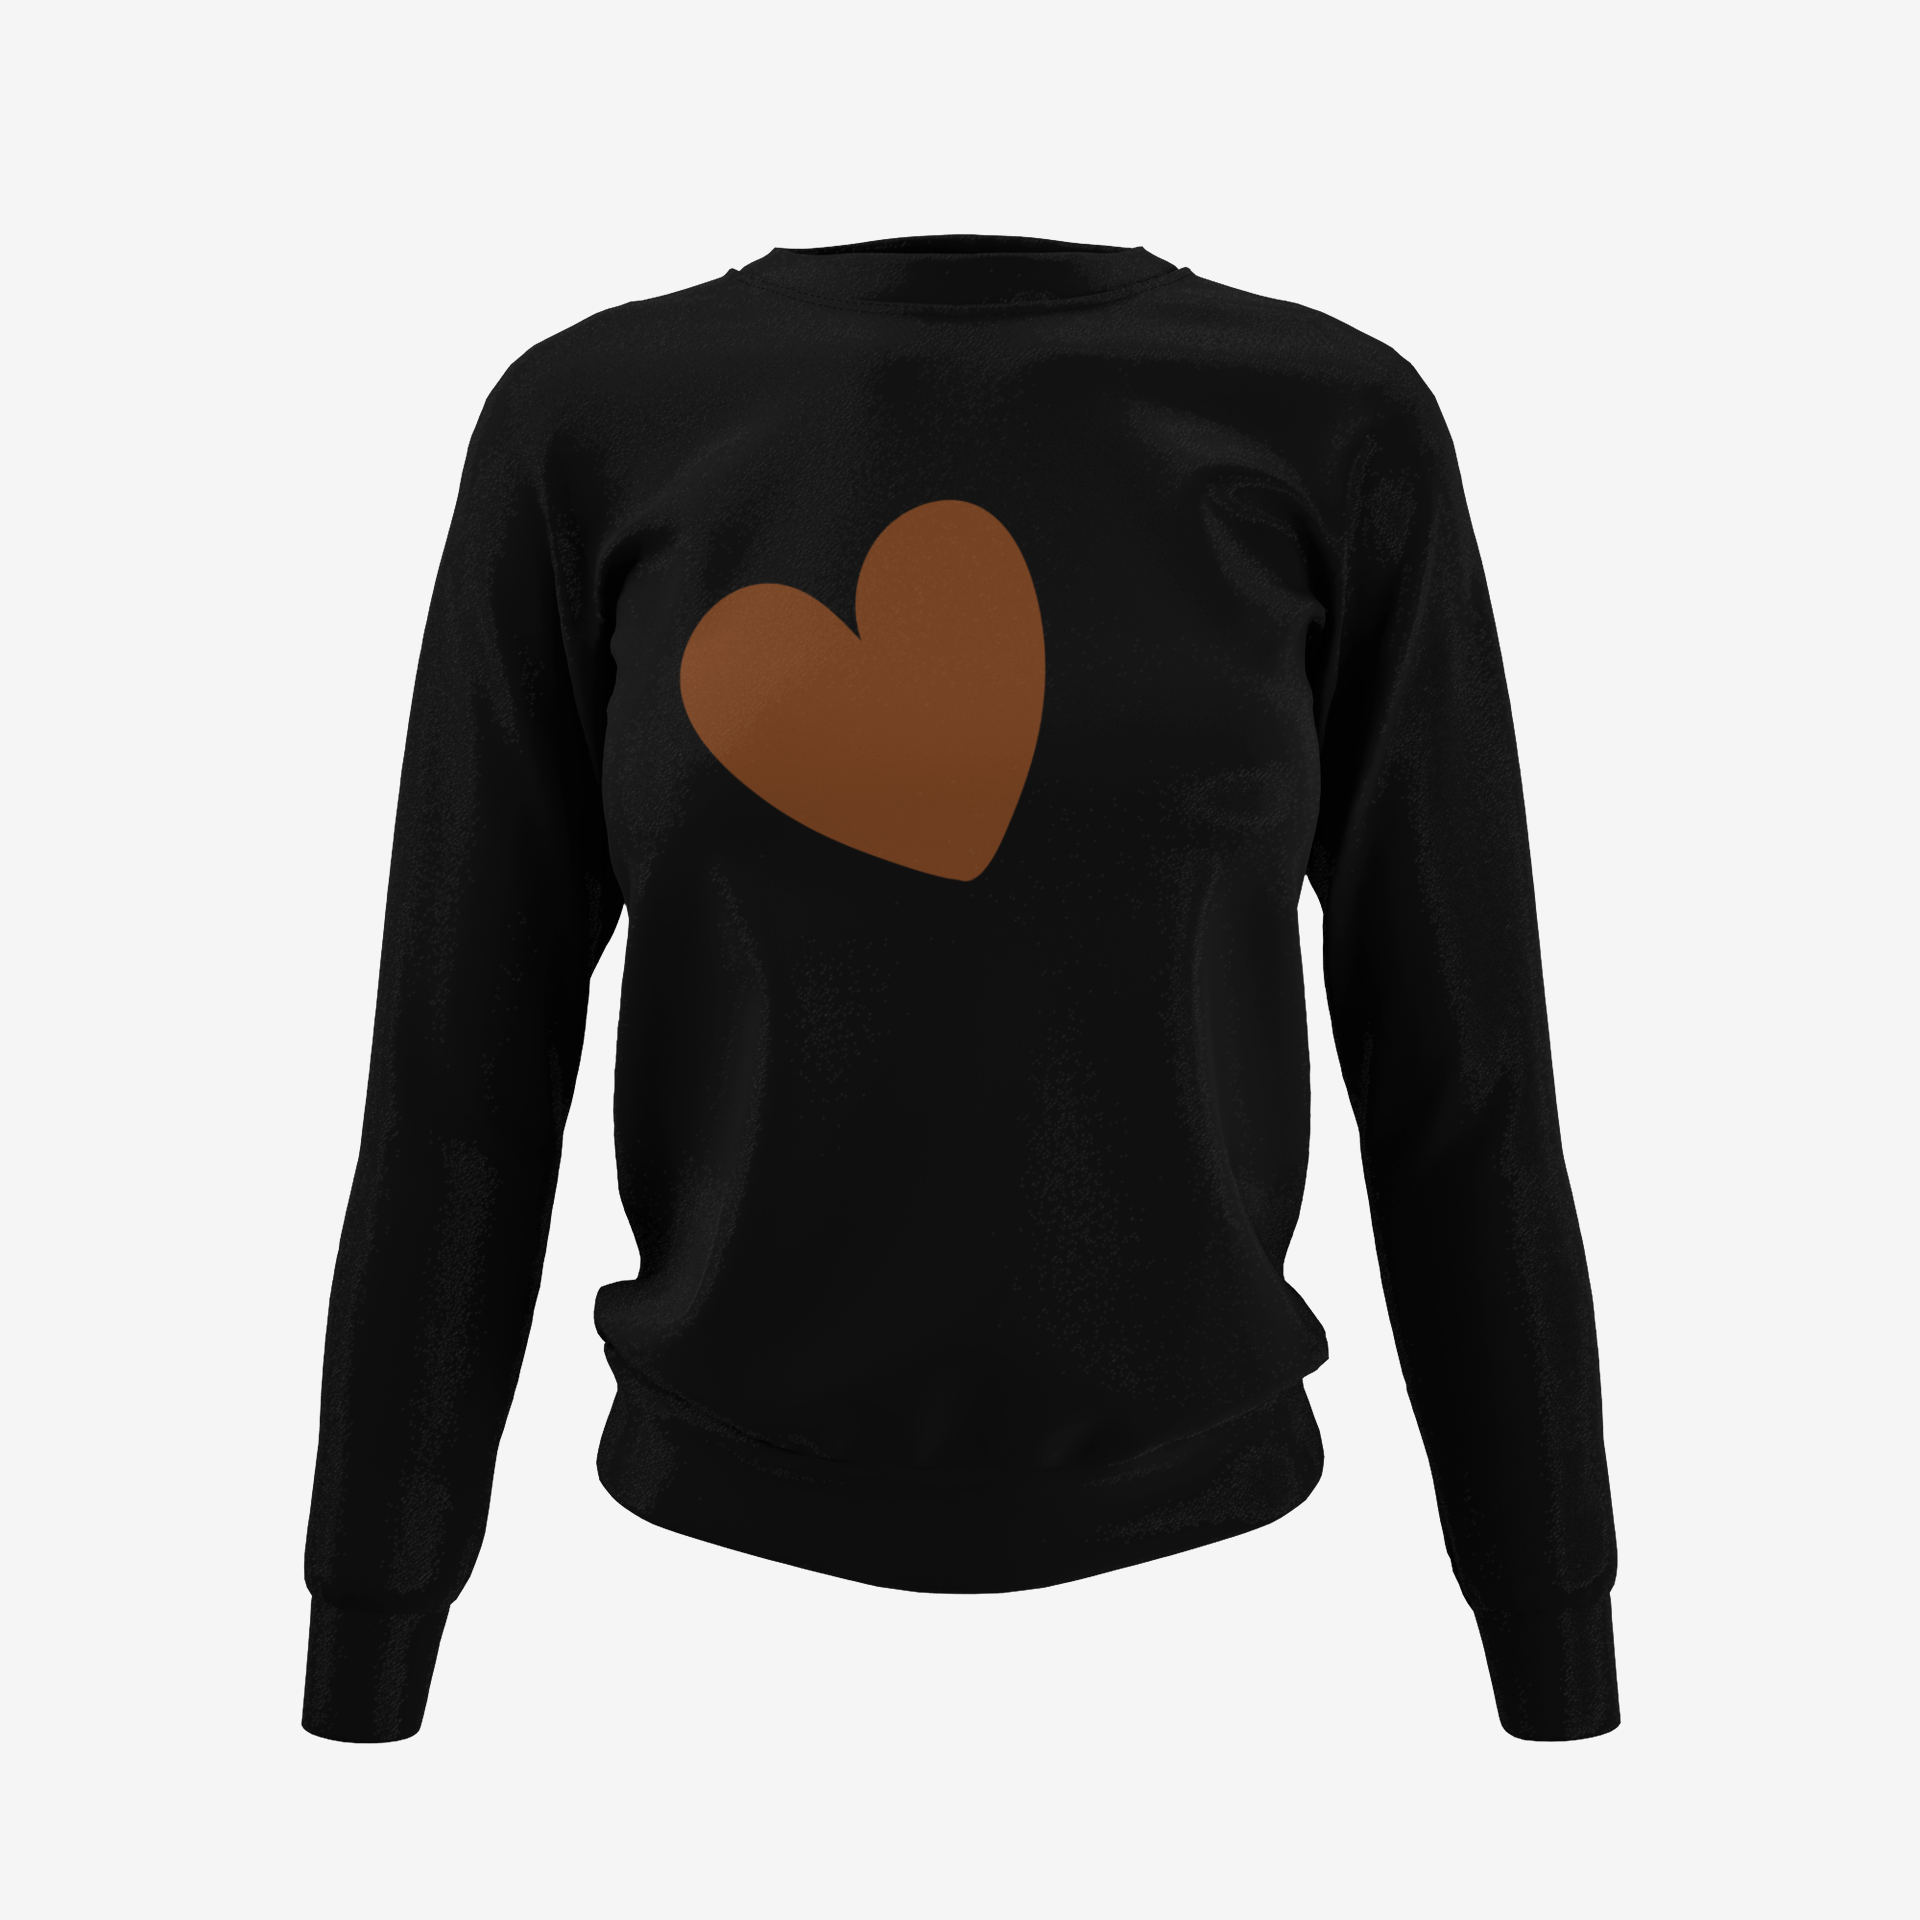 Chic Heart Sweatshirt